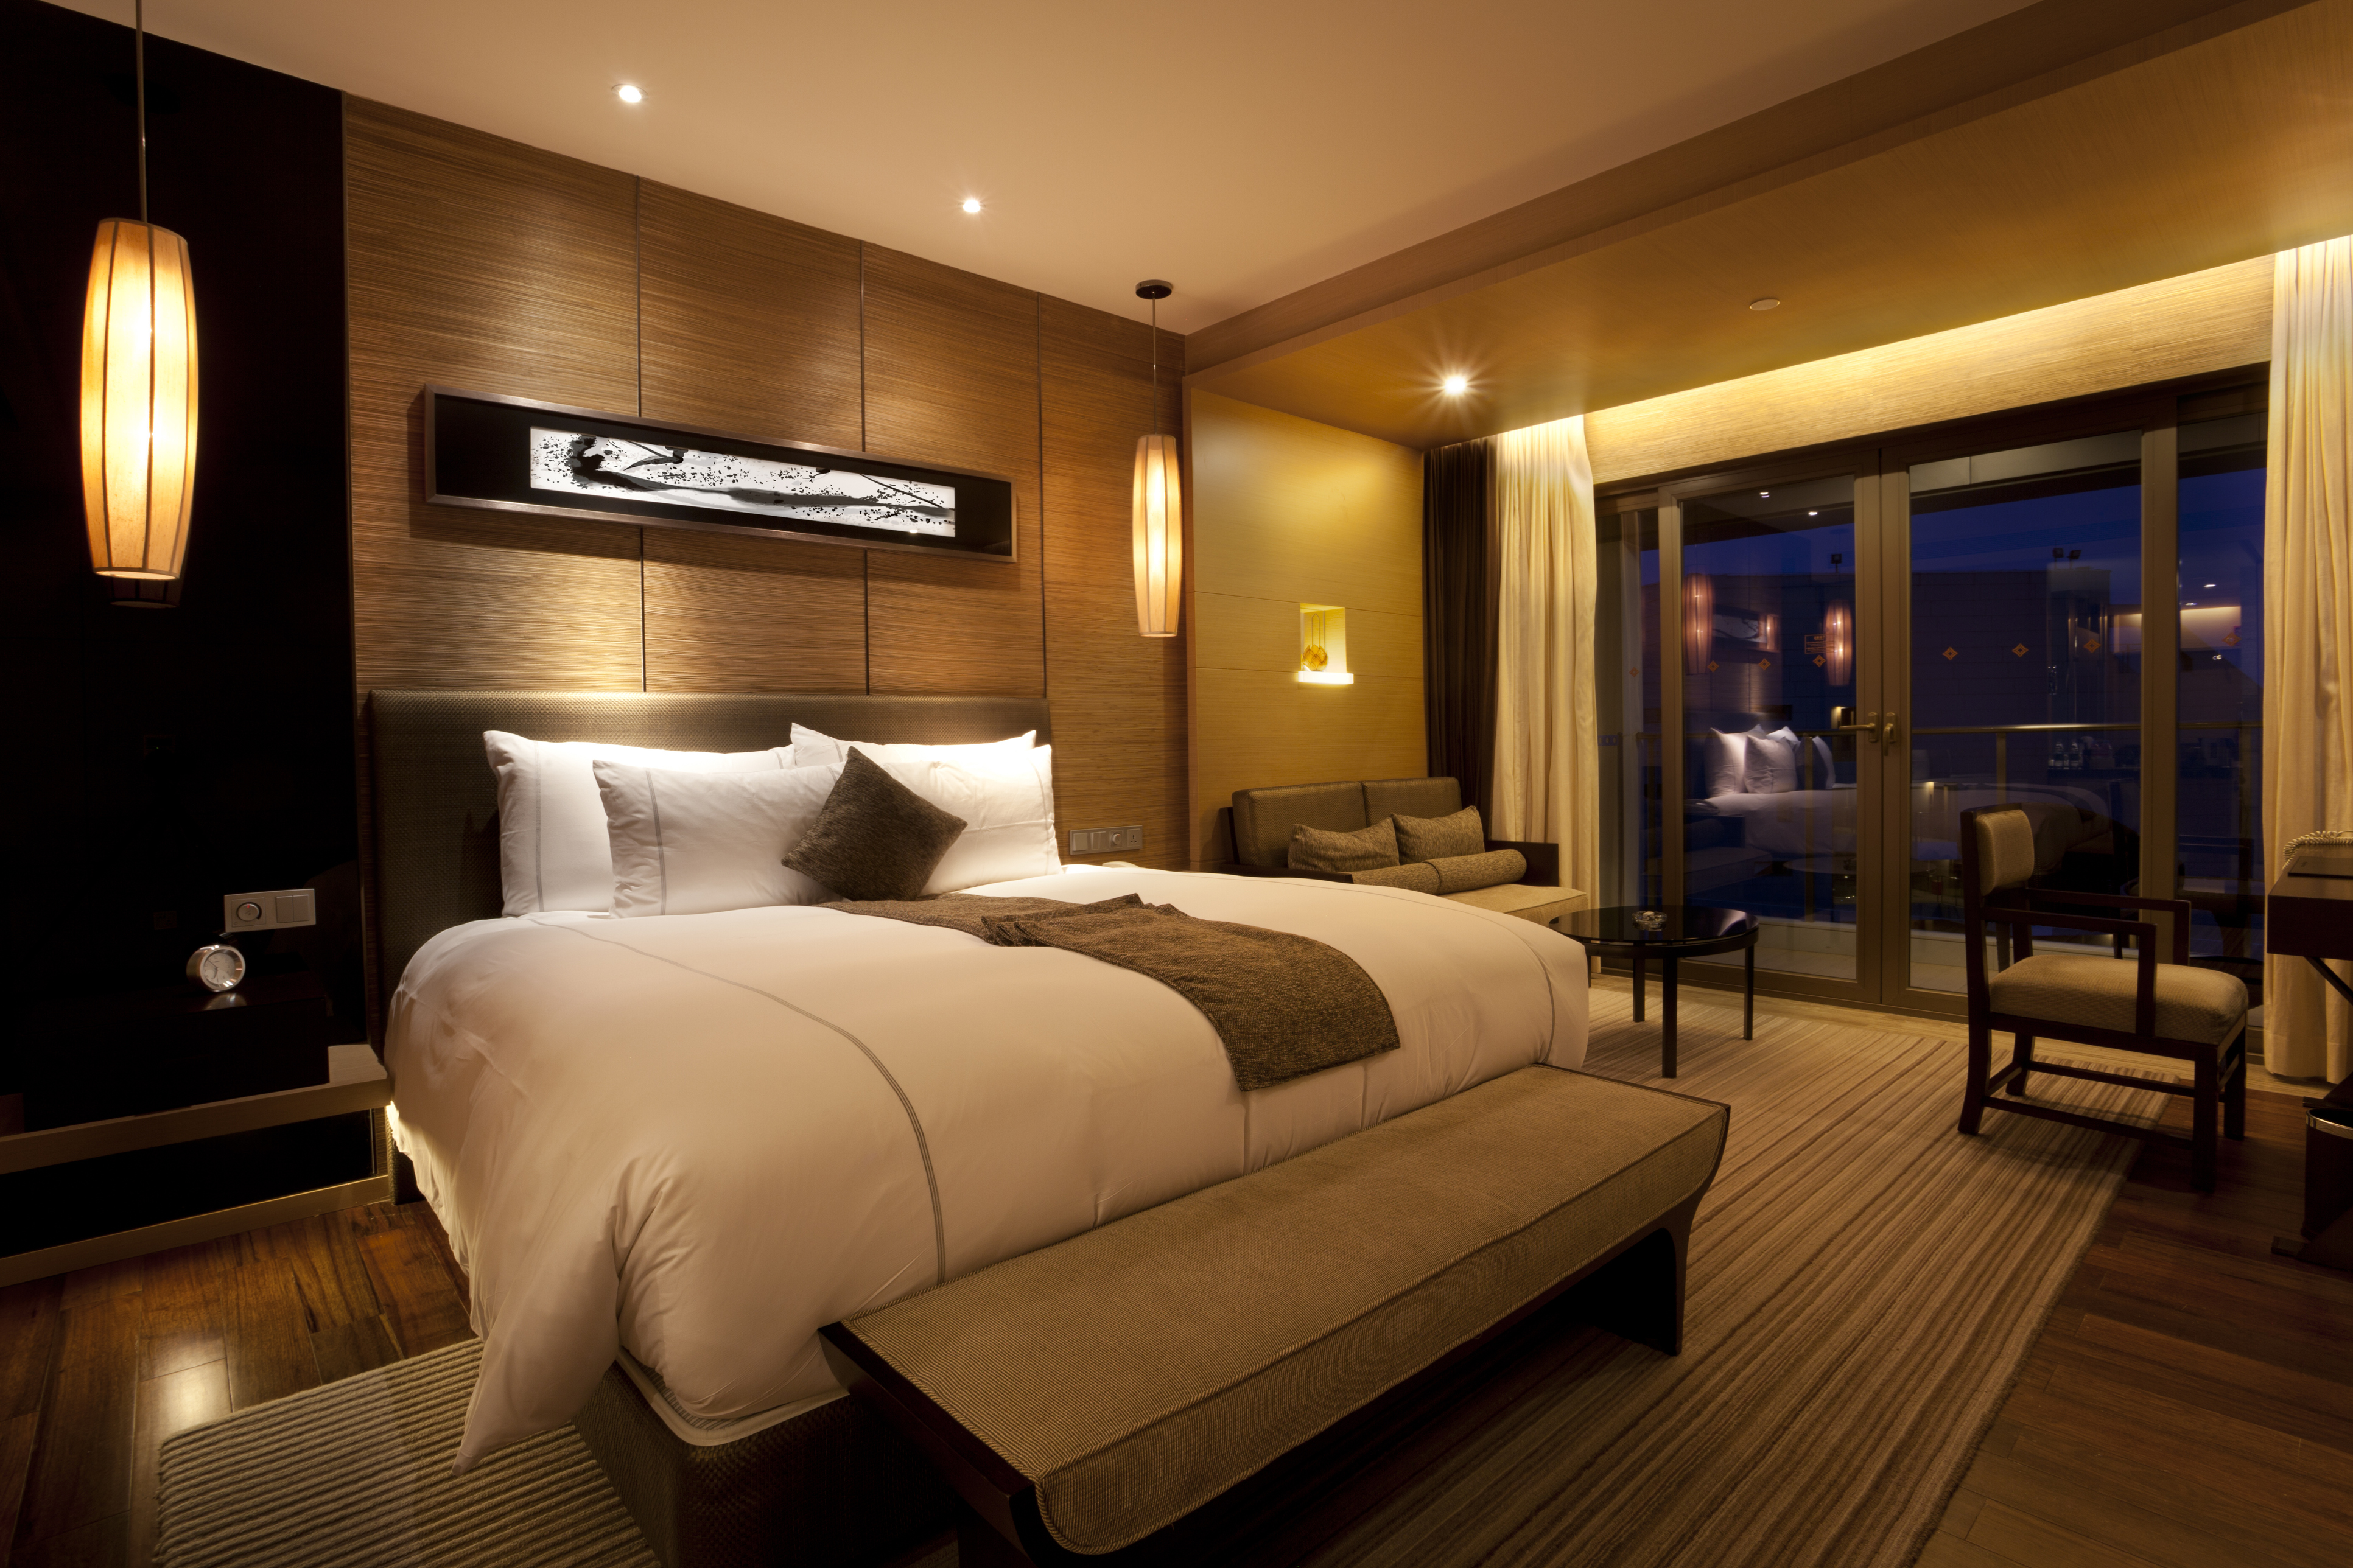 Luxury full. Спальня в гостиничном стиле. Освещение в отеле. Спальня в отельном стиле. Отель спальня.